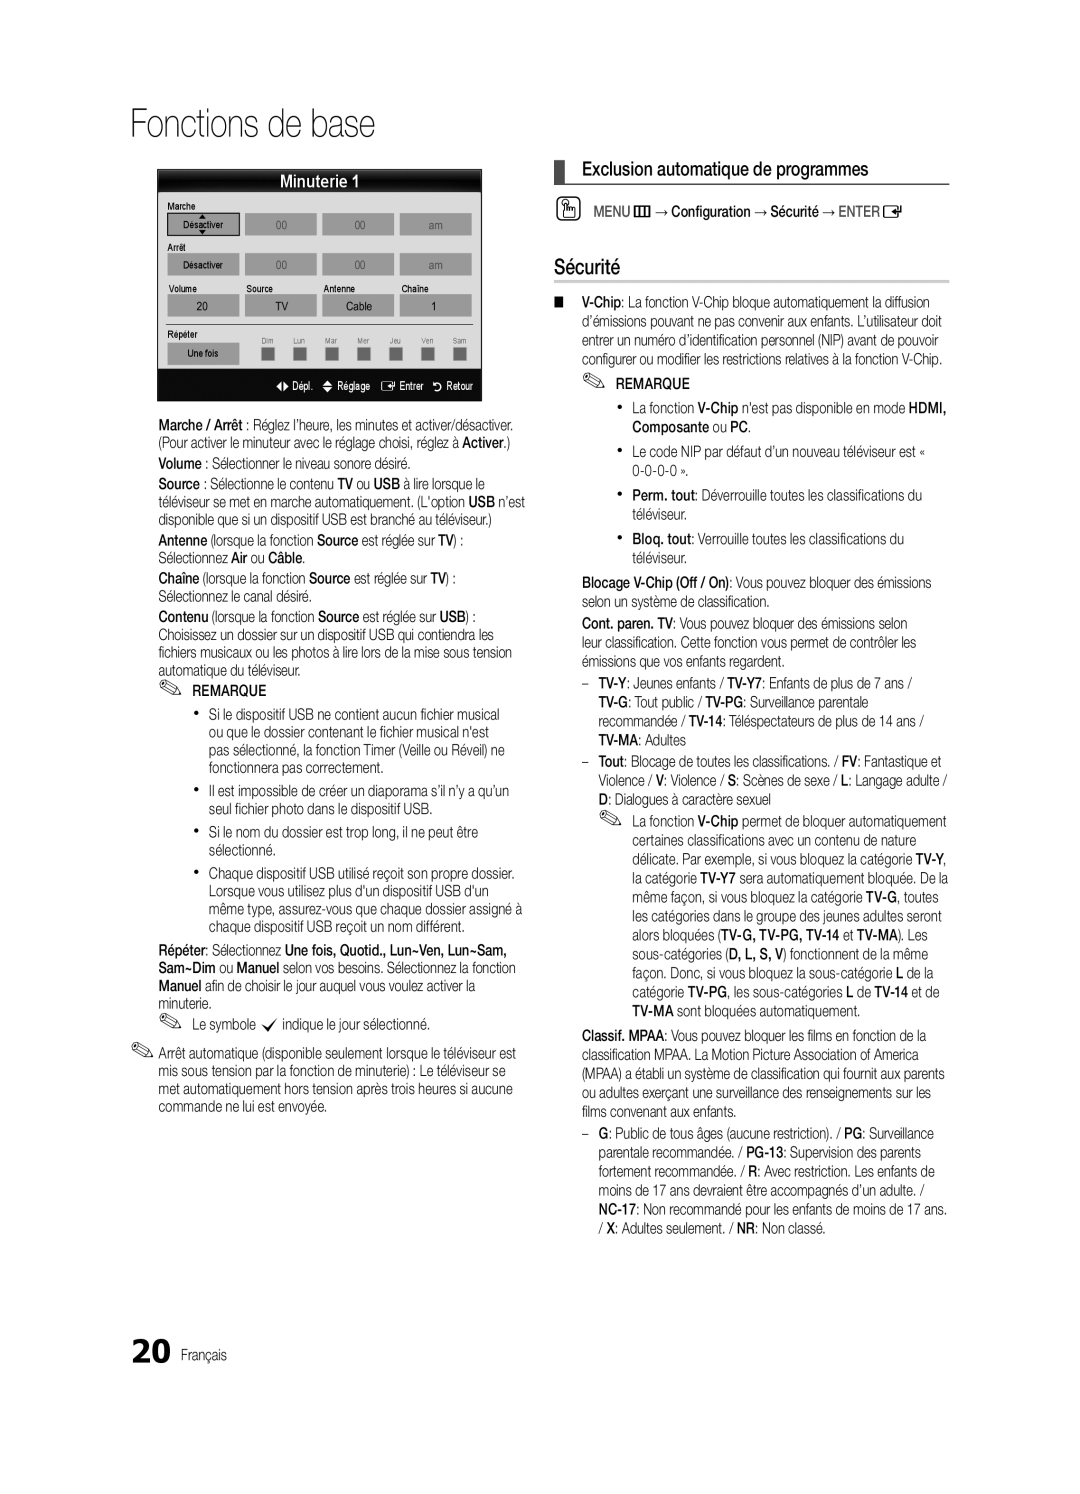 Samsung BN68-03004B-02, UC5000-ZC user manual Sécurité, Exclusion automatique de programmes, Minuterie, Fonctions de base 